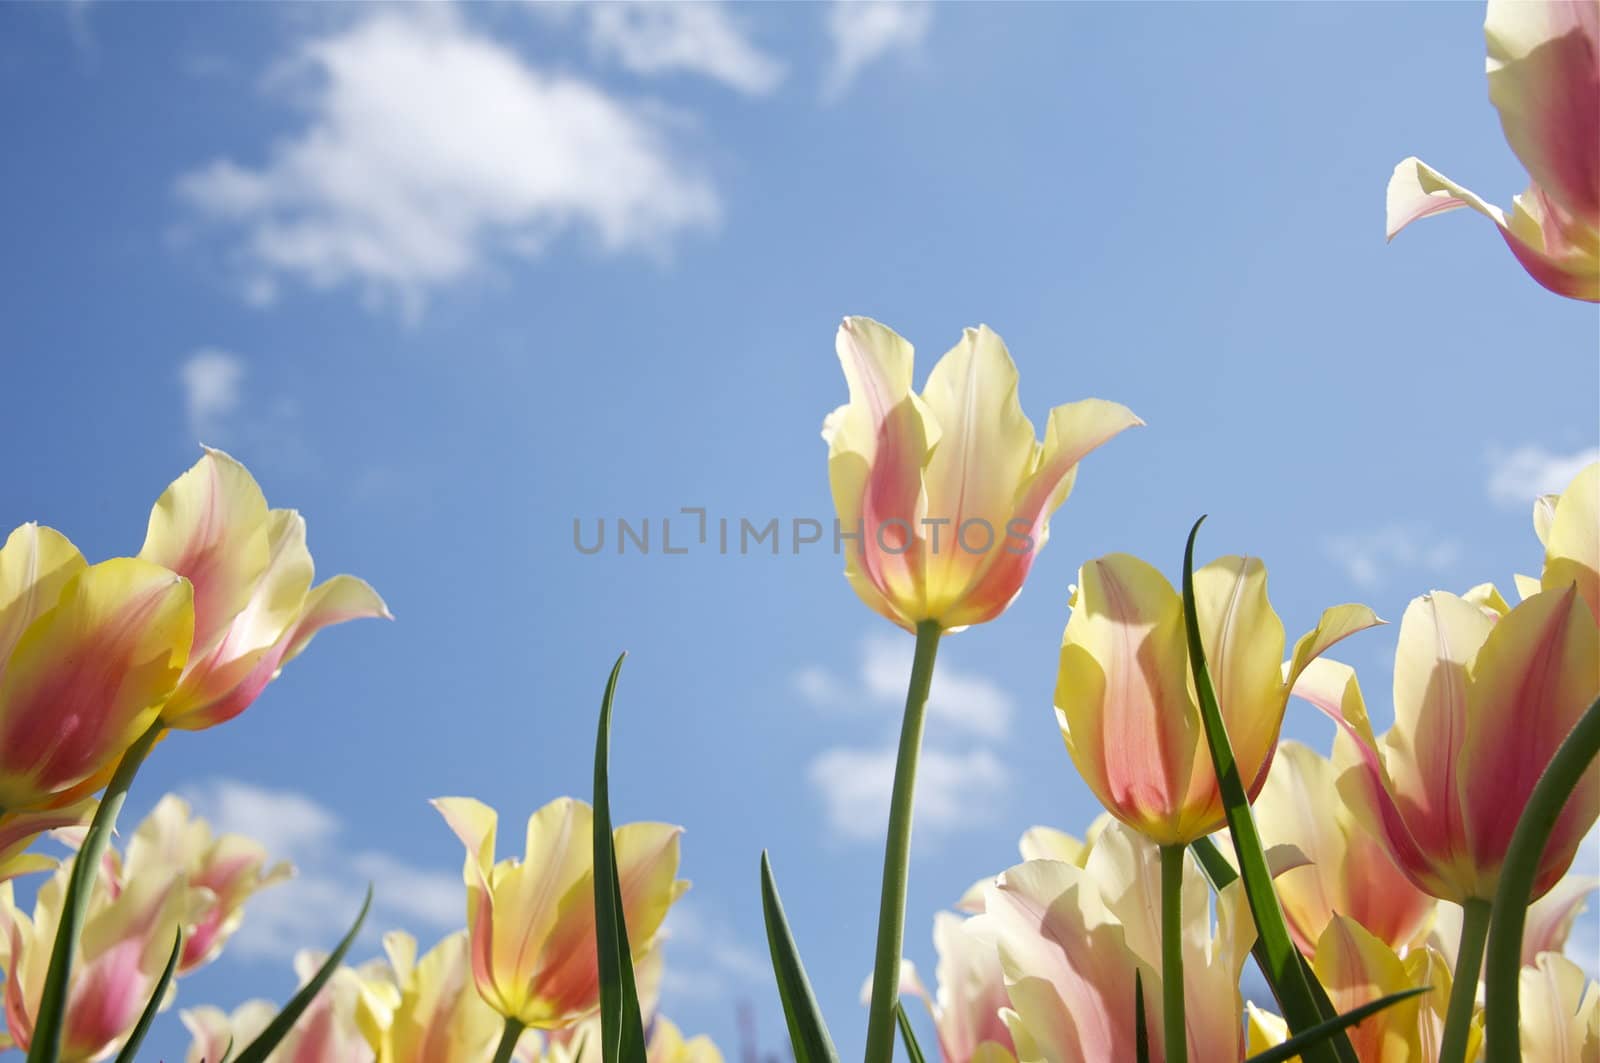 A garden full of spring tulips shine in the morning sunlight.